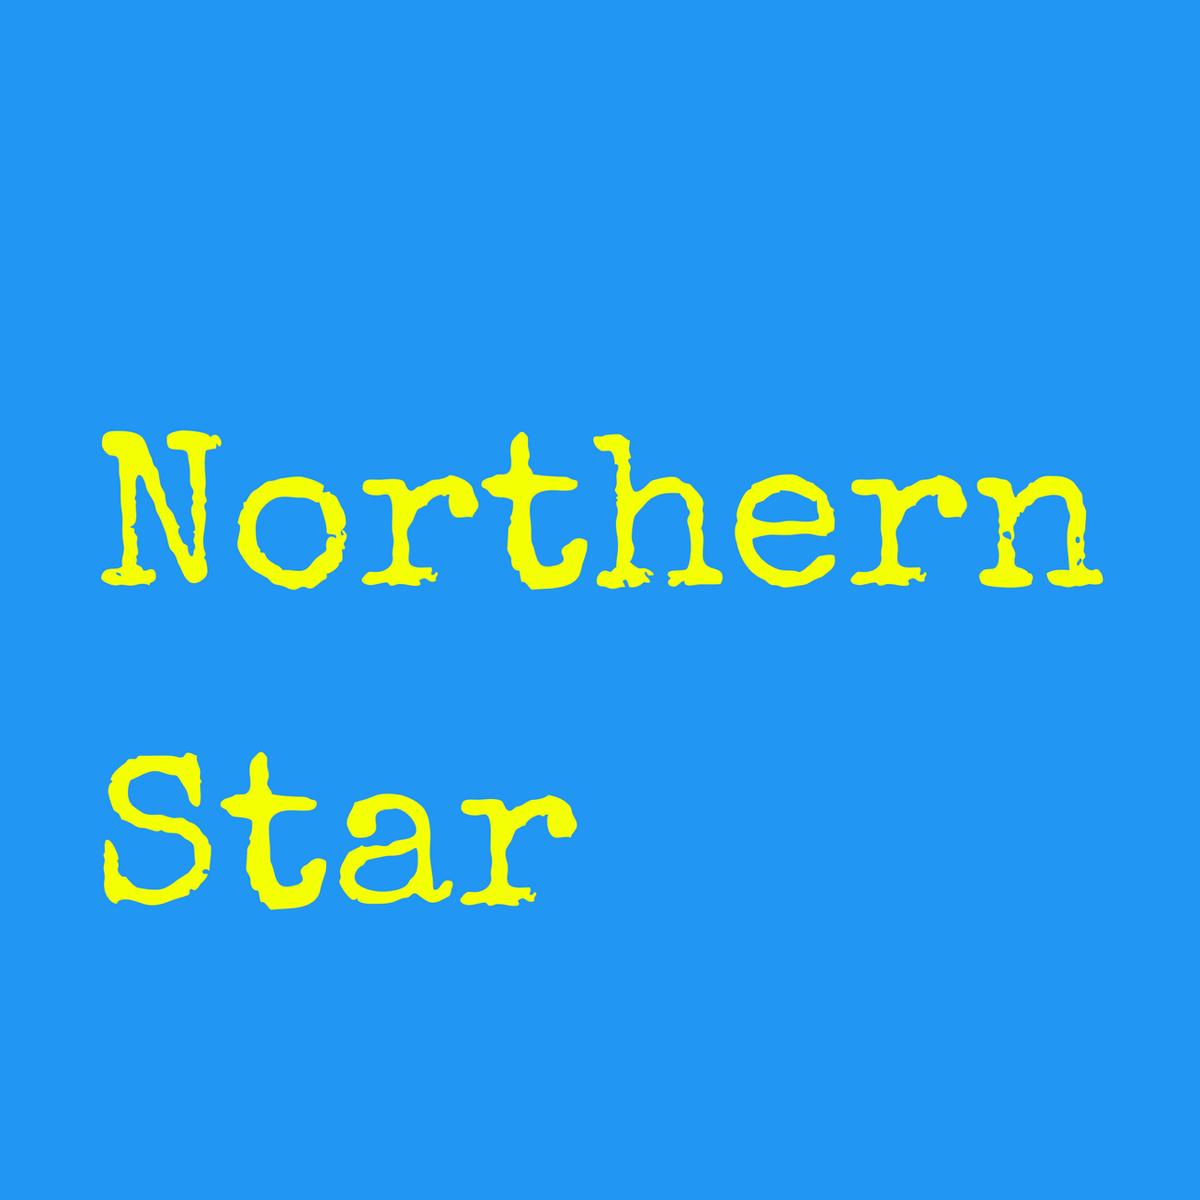 NorthernStarck